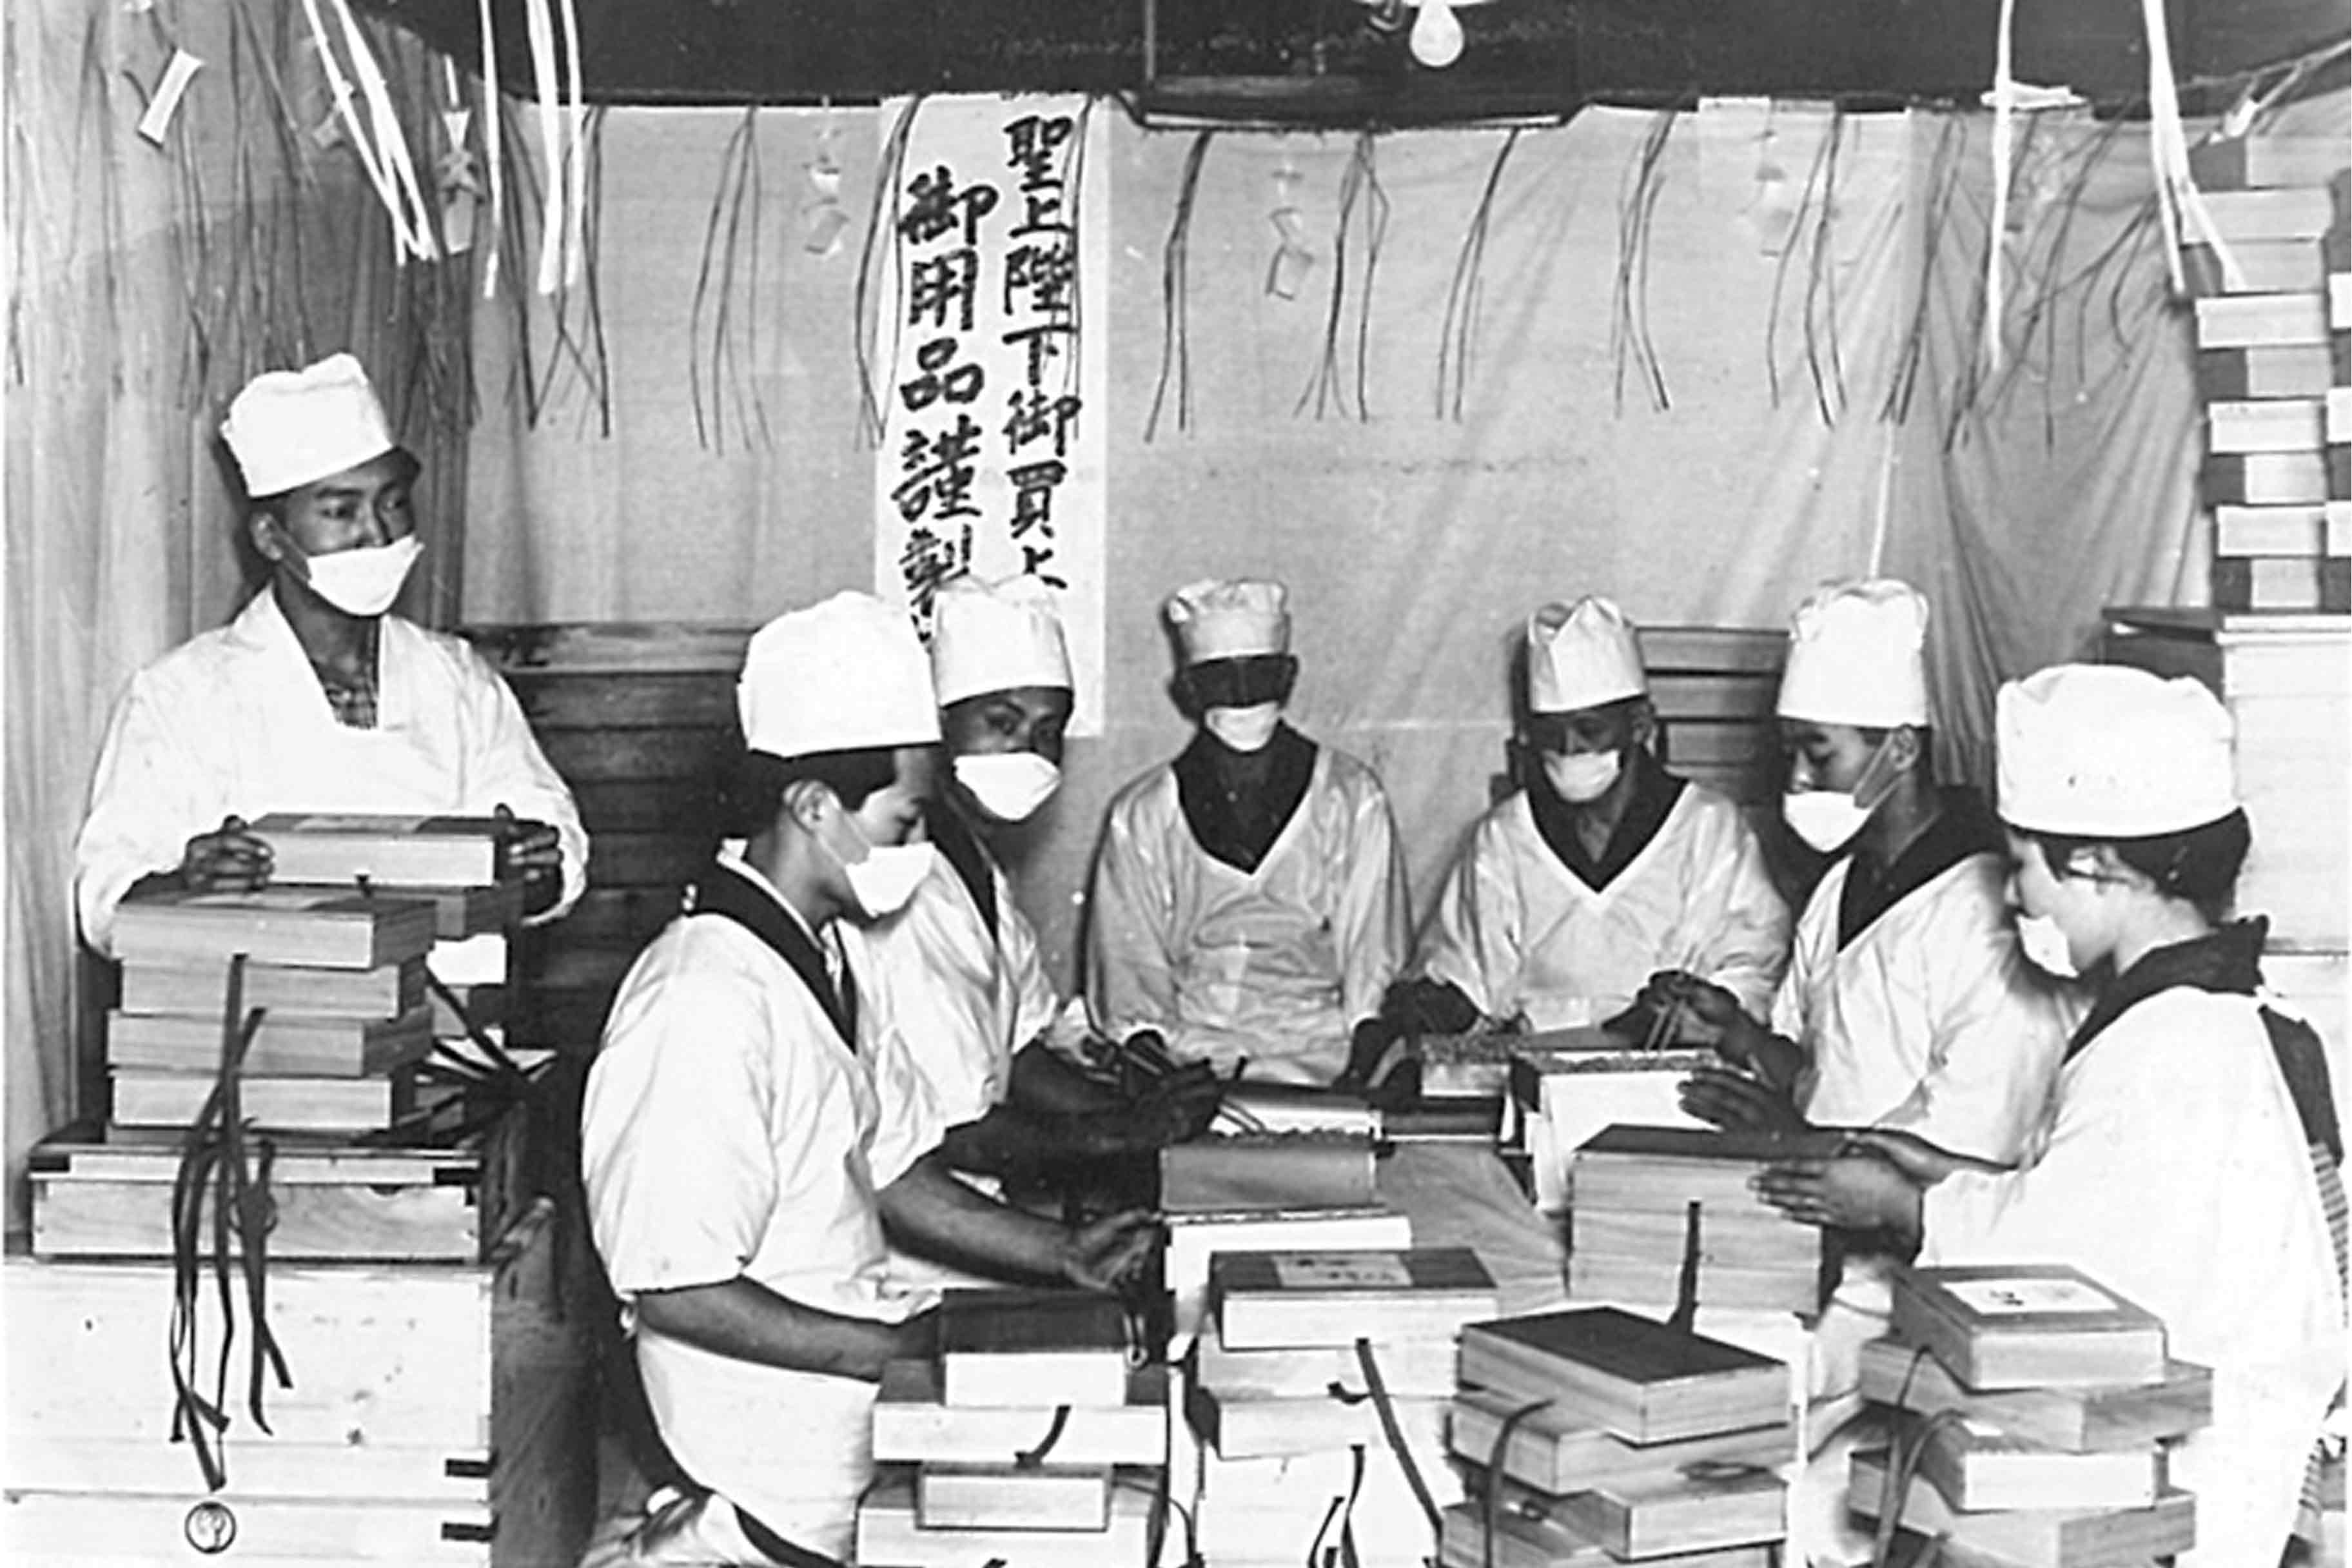 「この写真は昭和8年、昭和天皇の「柚餅」お買い上げに際し、職人一同、斎戒沐浴（さいかいもくよく＝飲食をつつしみ水で身を清める）して製造している様子だ。」